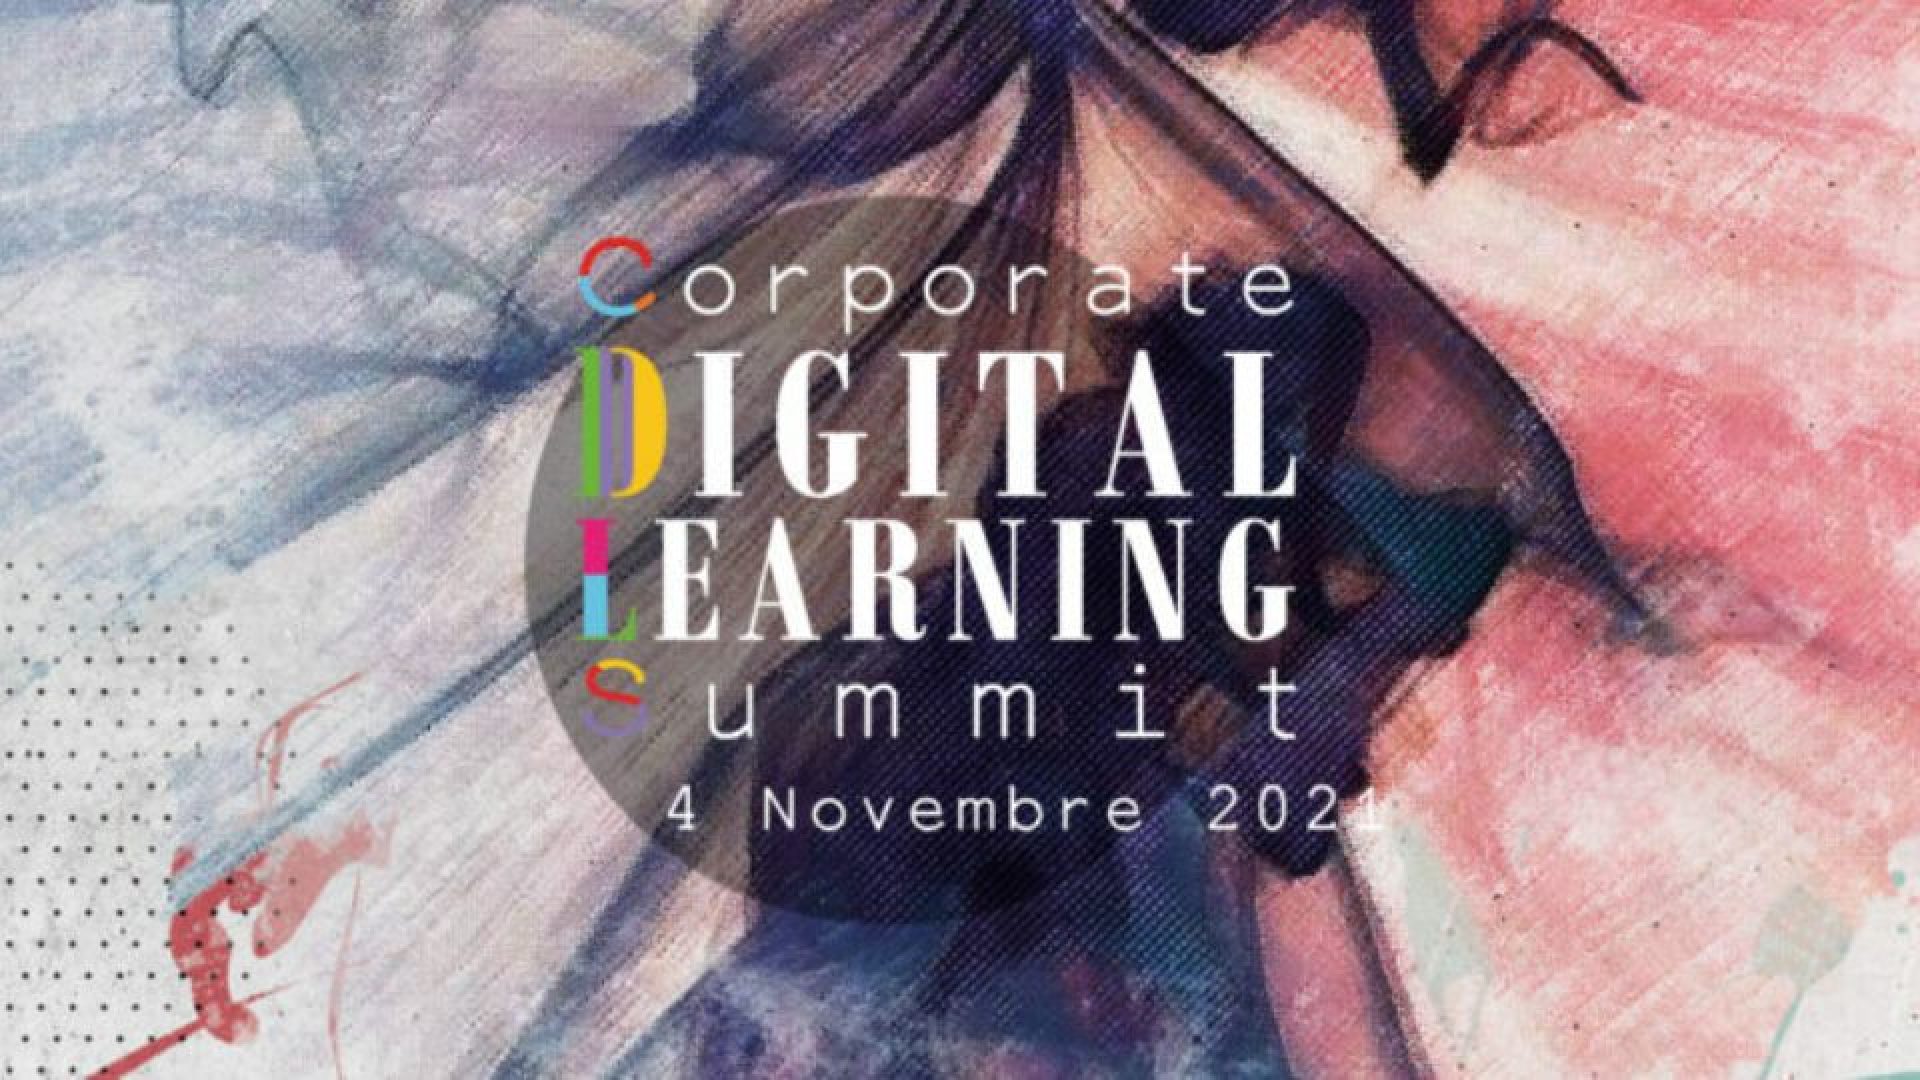 digital learning summit